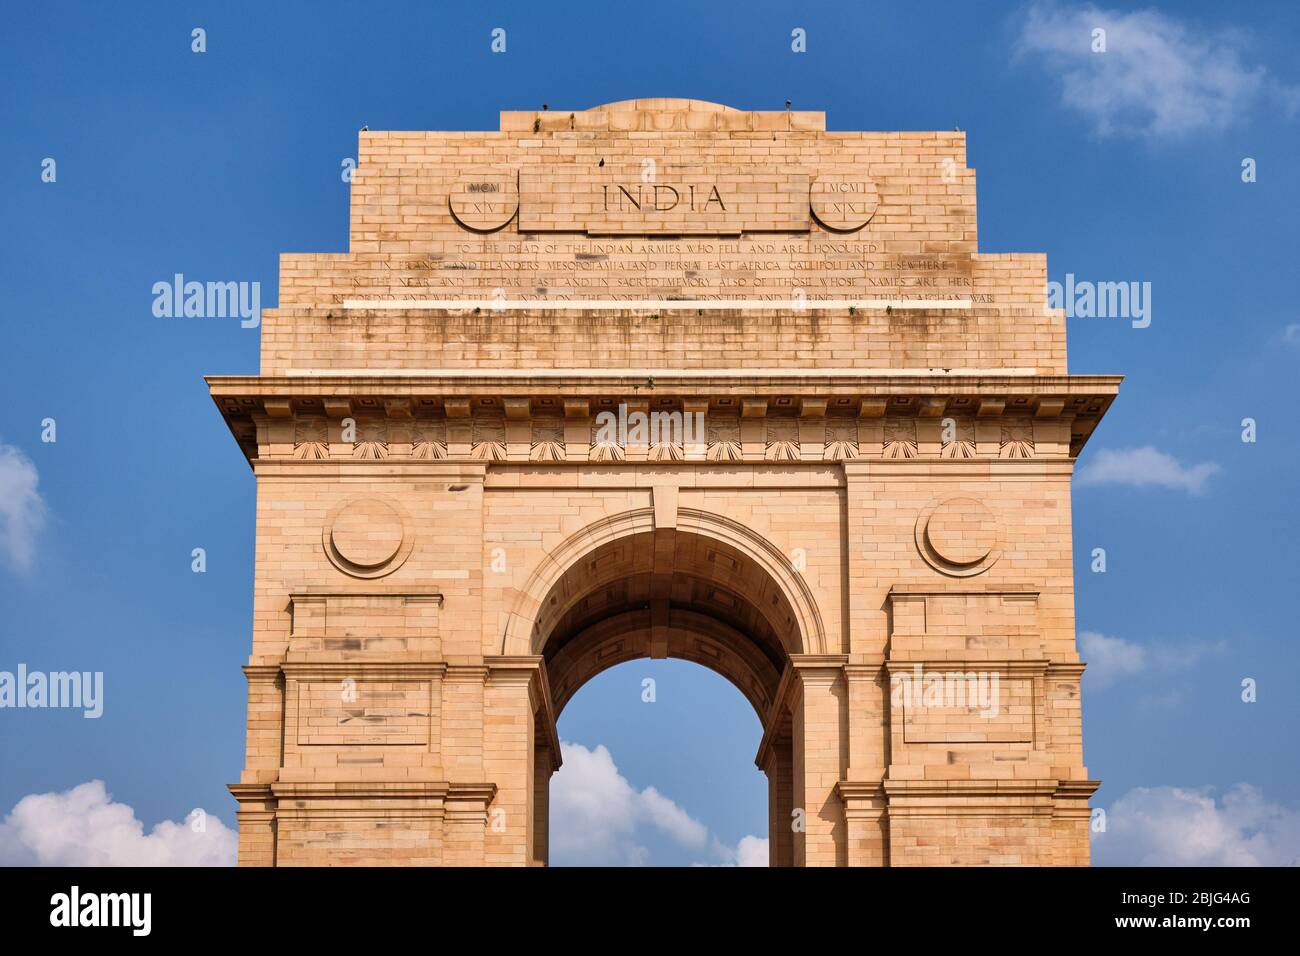 Le mémorial de guerre de la porte de l'Inde à New Delhi, en Inde, dédié à 70 000 soldats de l'armée indienne britannique tués dans des guerres entre 1914 et 1921 Banque D'Images